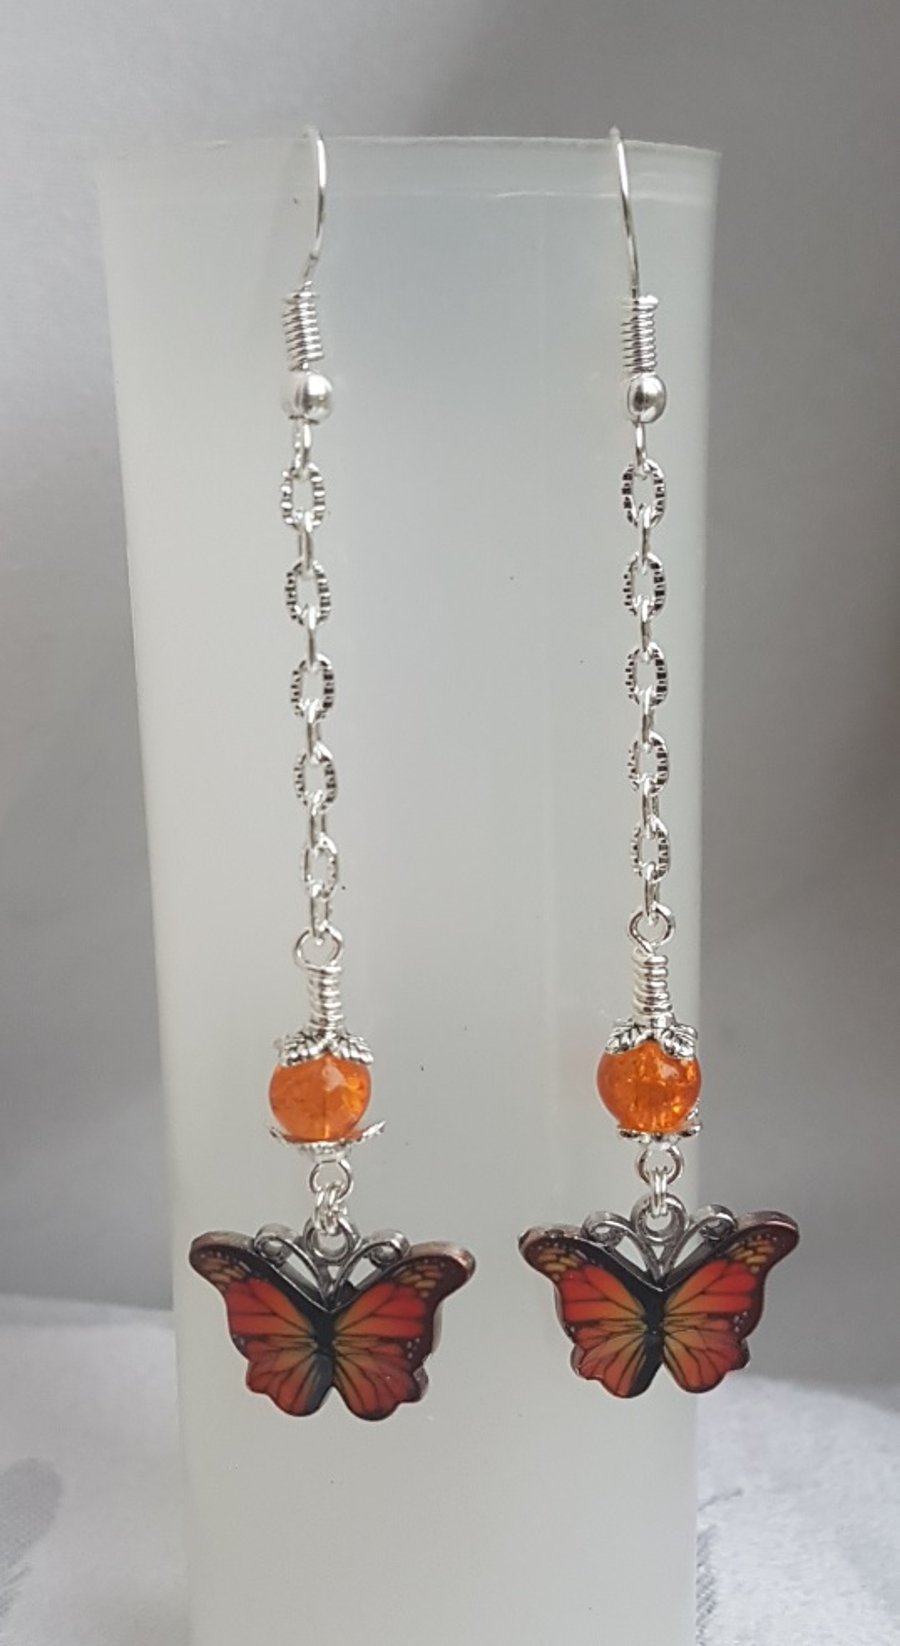 Gorgeous Dangly Orange Butterfly Earrings - Silver Tones.